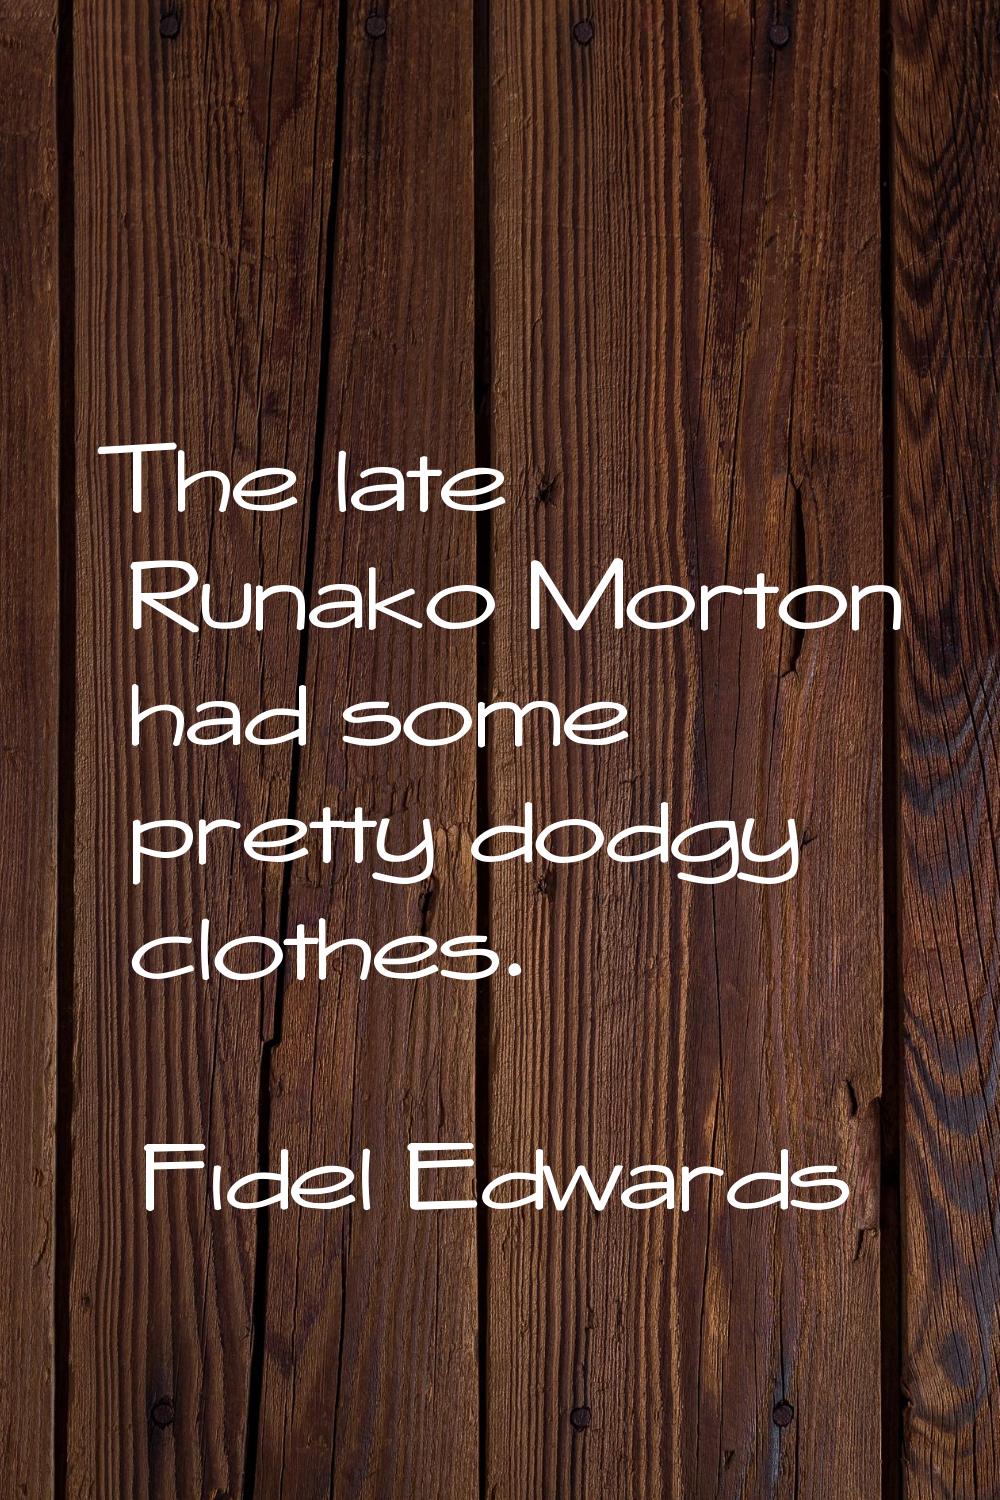 The late Runako Morton had some pretty dodgy clothes.